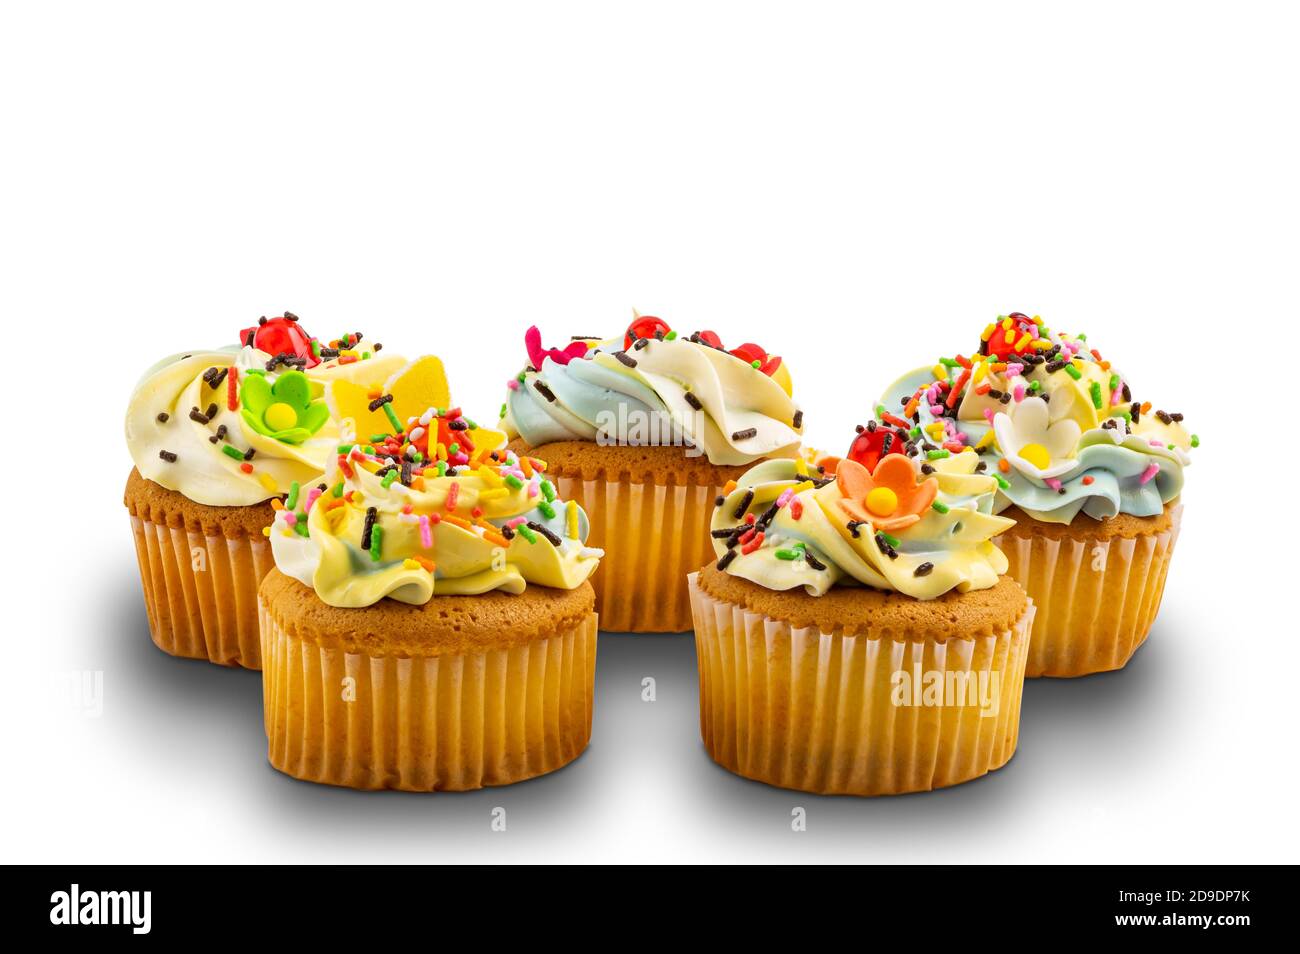 Gruppo di cupcake alla vaniglia con gelato alla crema di burro alla vaniglia decorato con arcobaleno multicolore spruzzato su sfondo bianco con percorso di ritaglio. Foto Stock